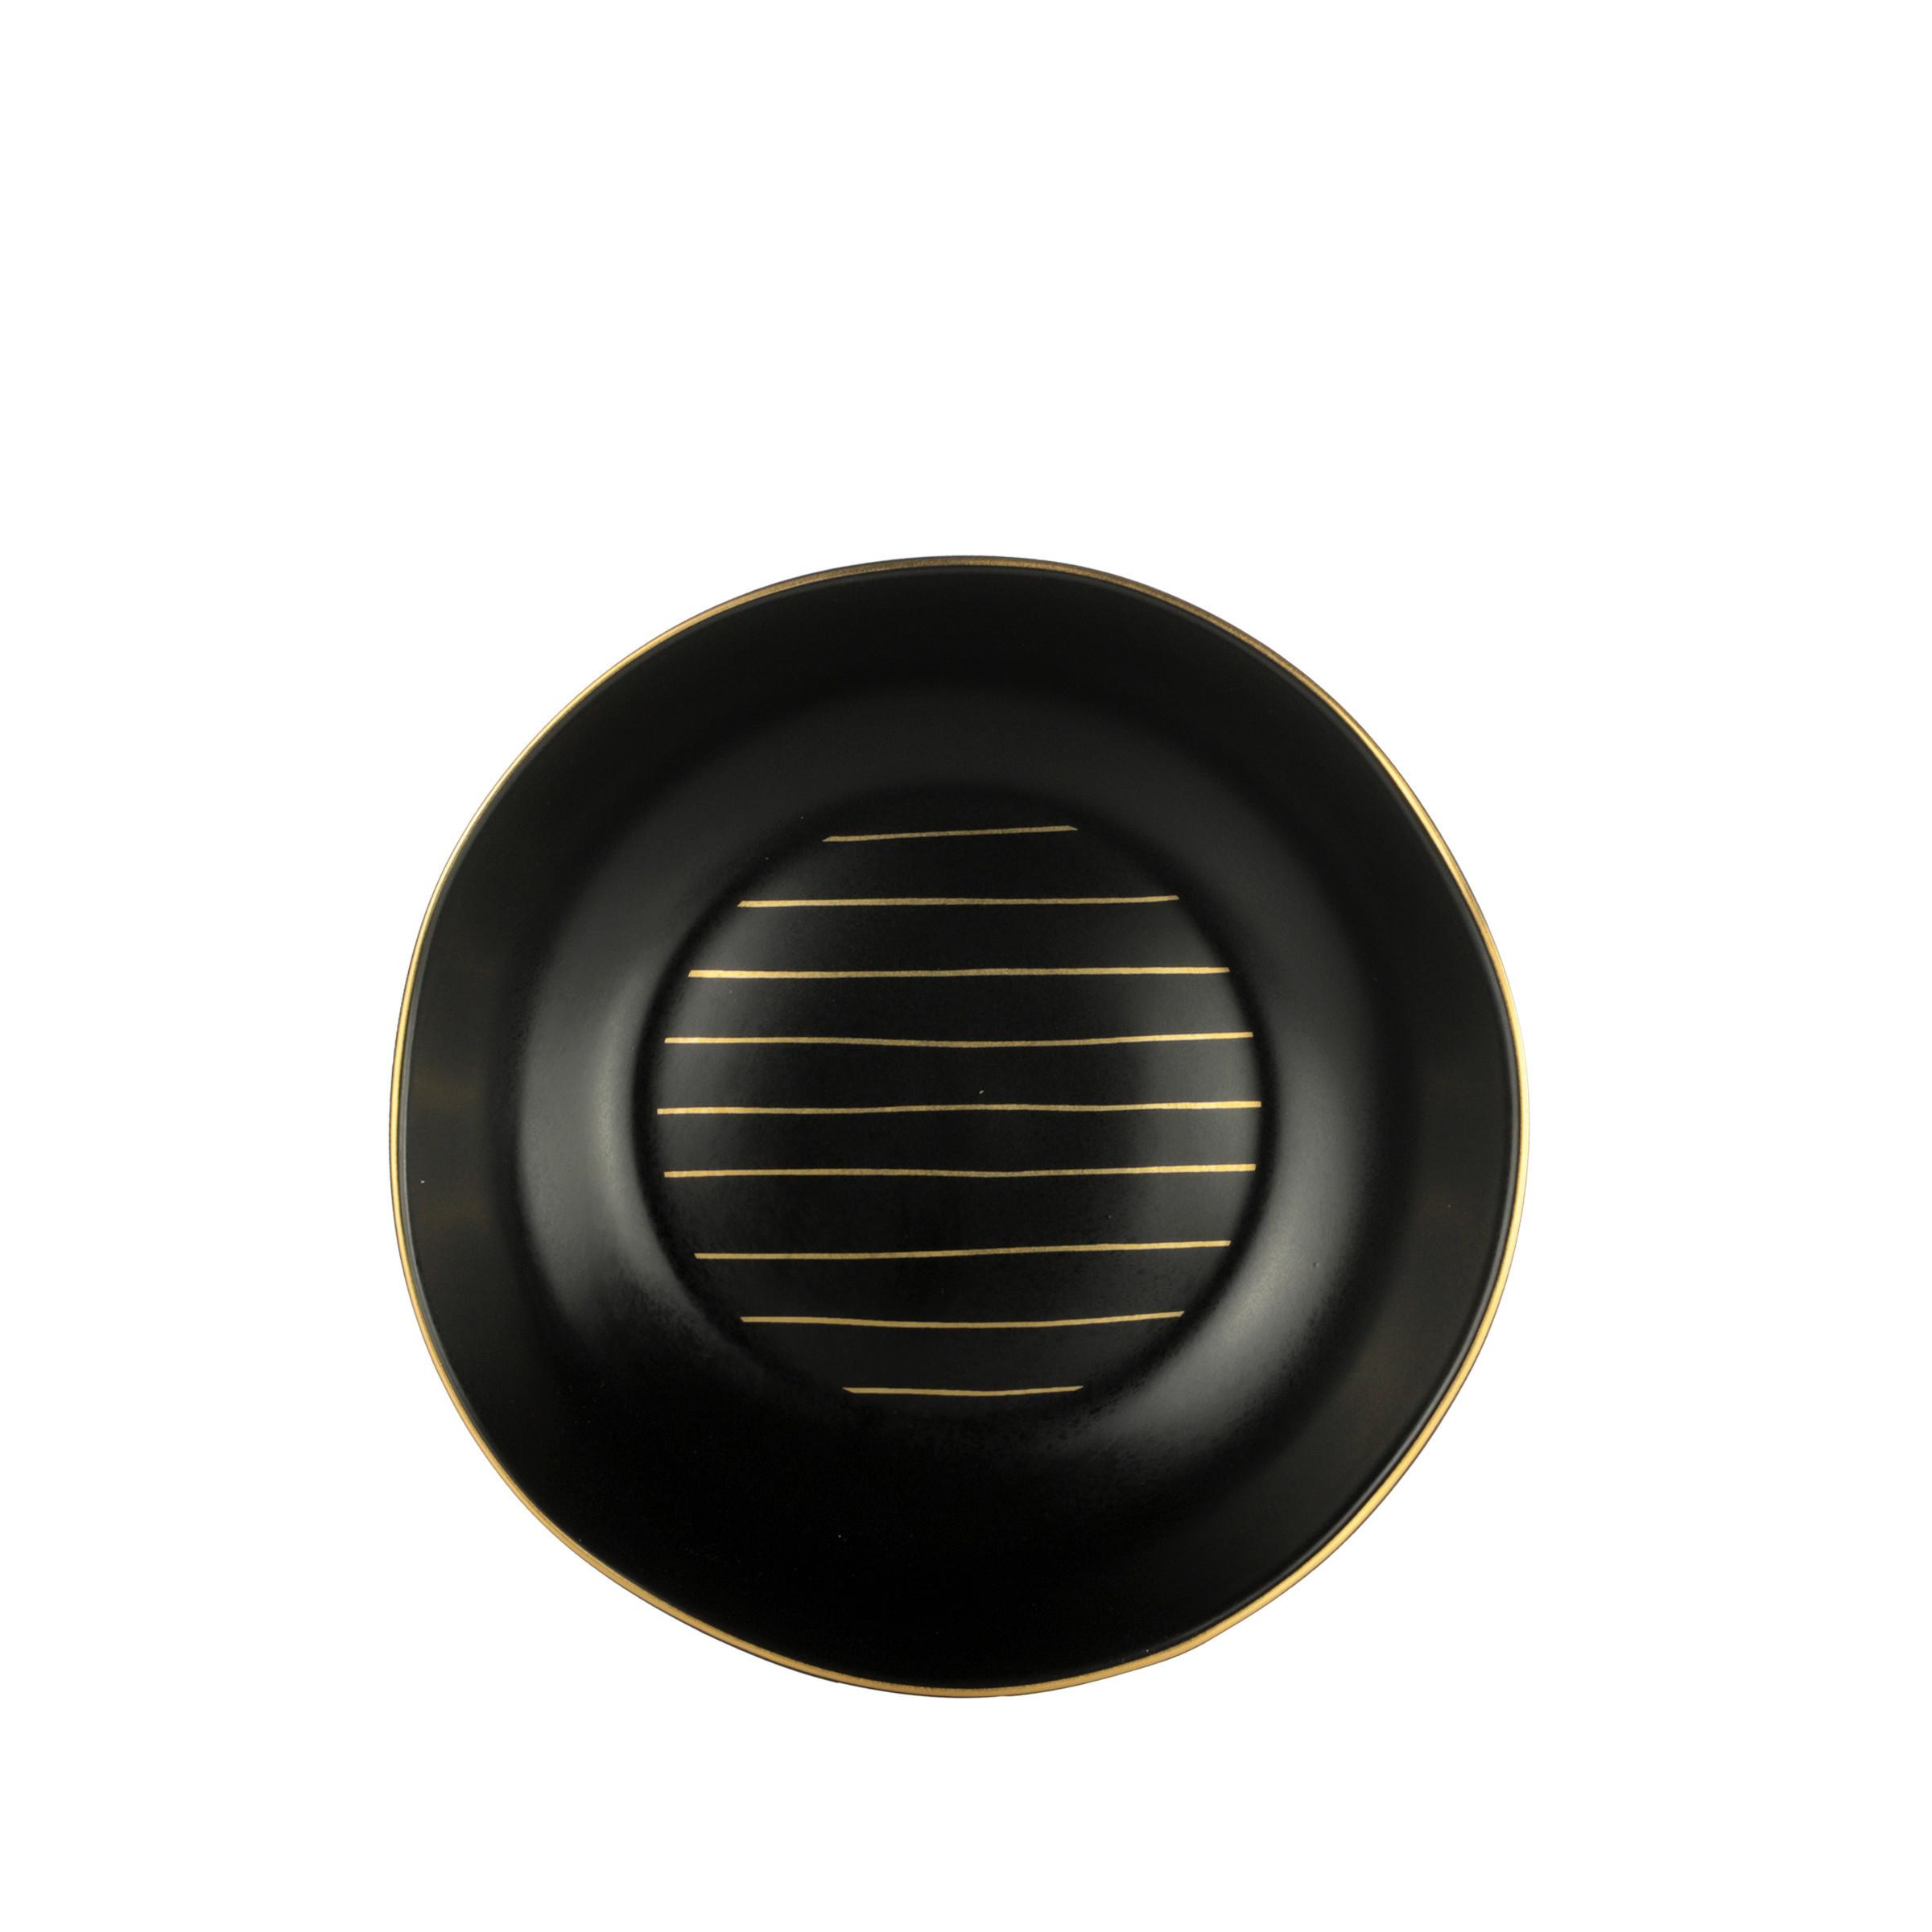 Globoki Krožnik Onix - zlate barve/črna, Moderno, keramika (20,5cm) - Premium Living